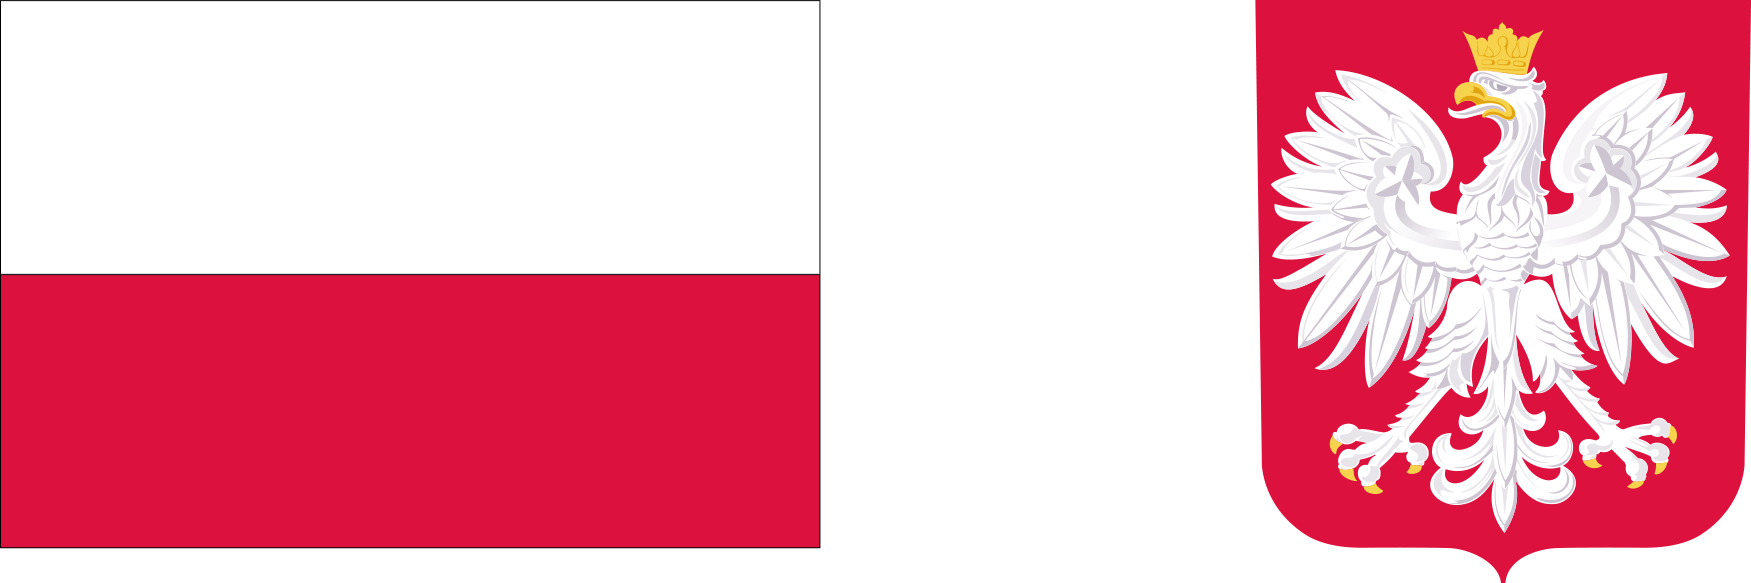 Godło i flaga Polski informujące o dofinansowaniu projektu z budżetu państwa